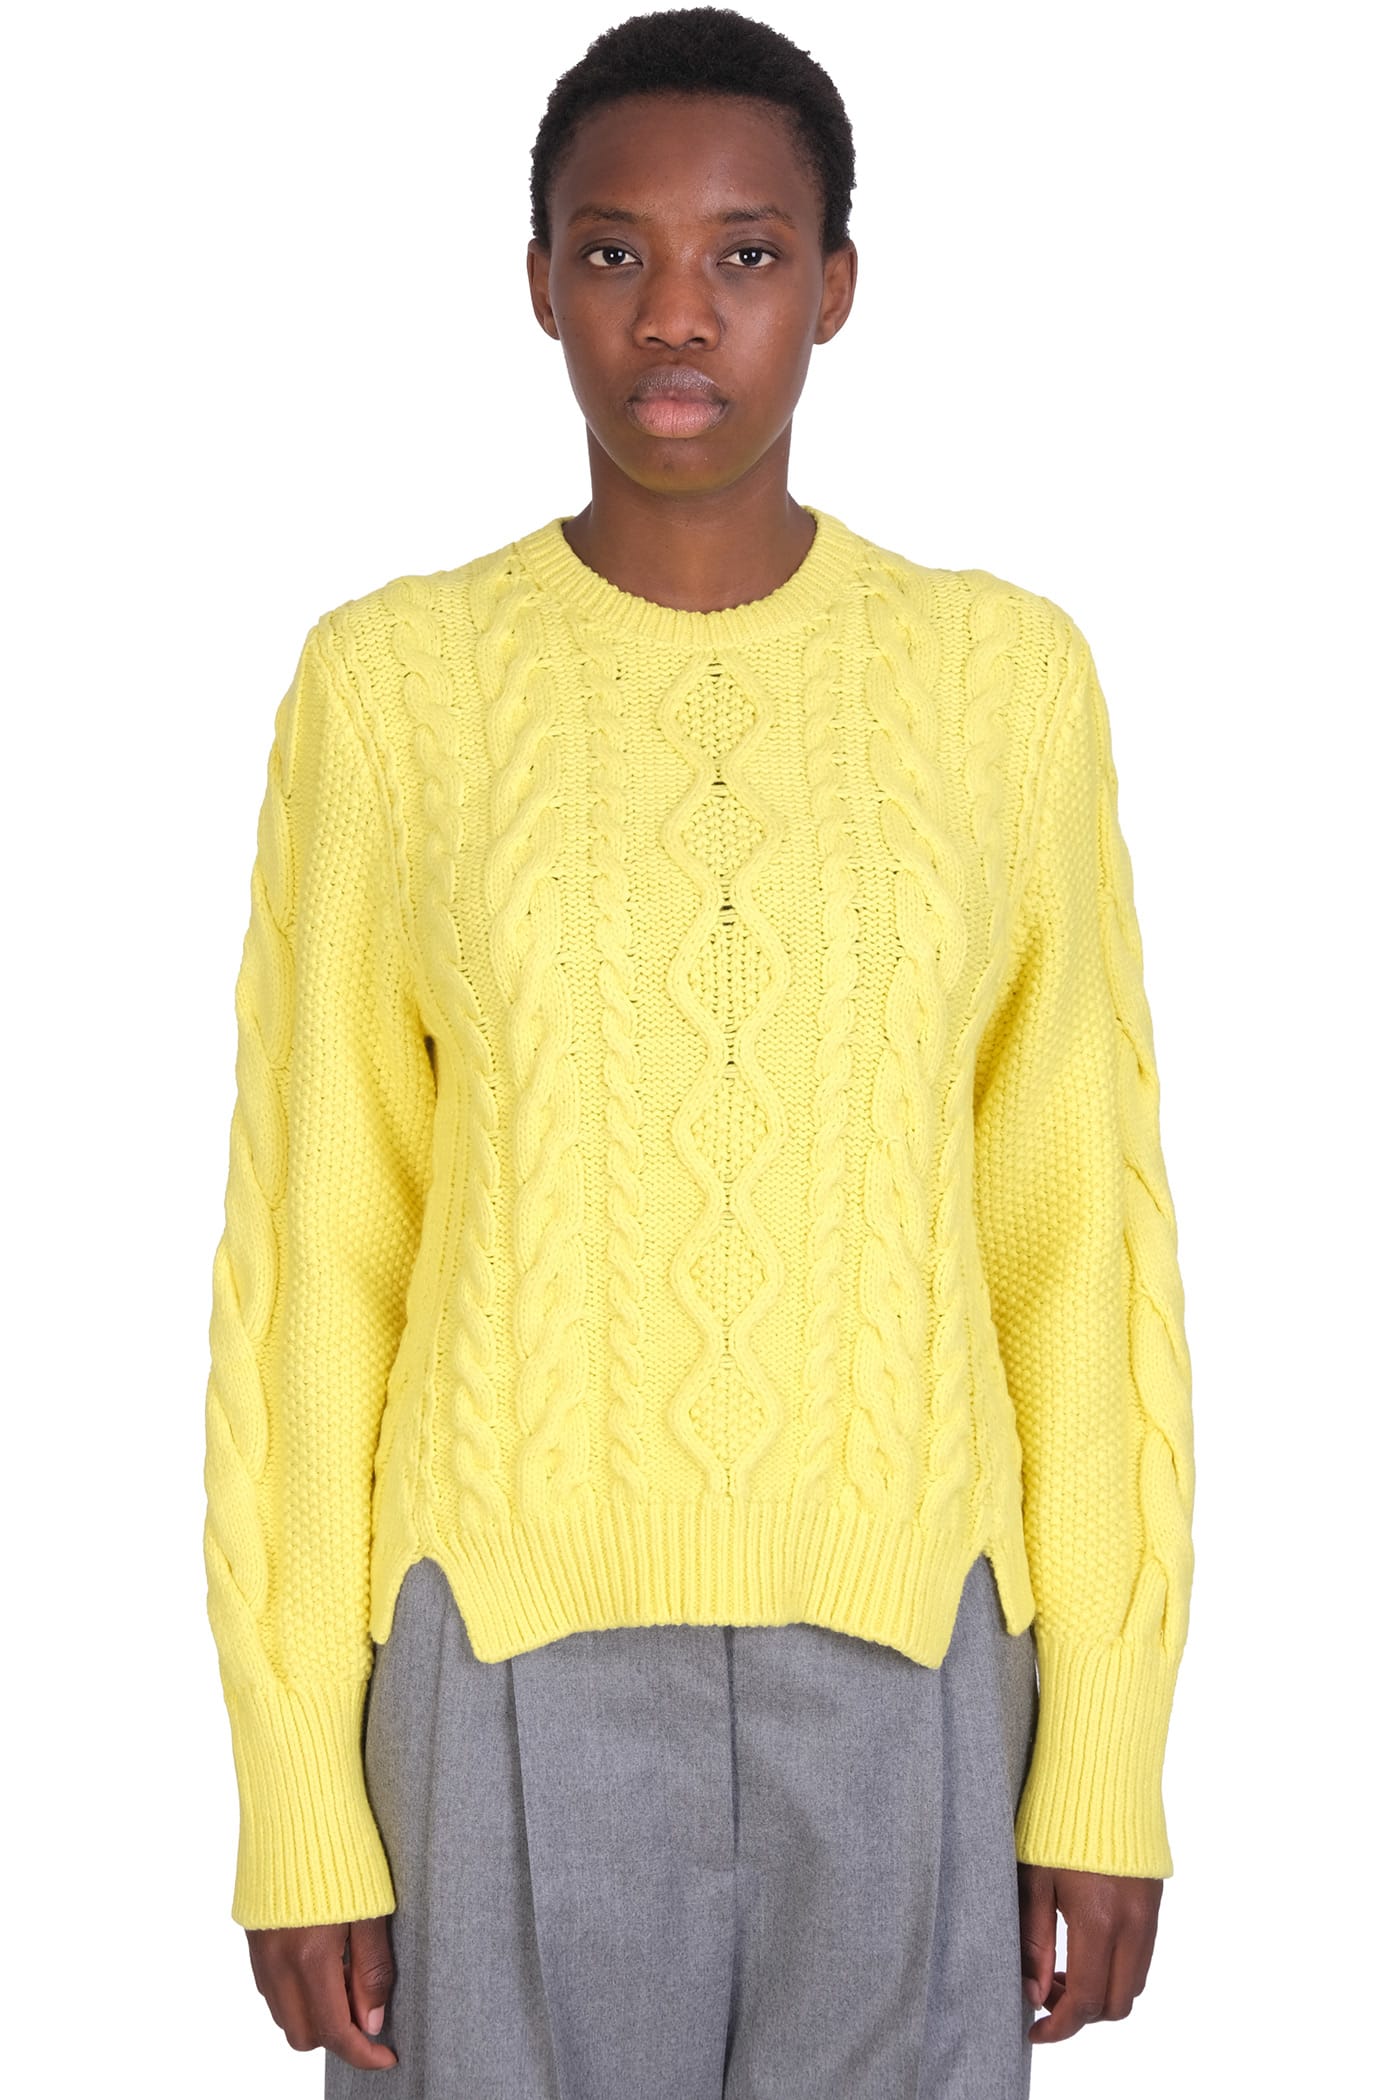 Stella McCartney Knitwear In Yellow Cotton